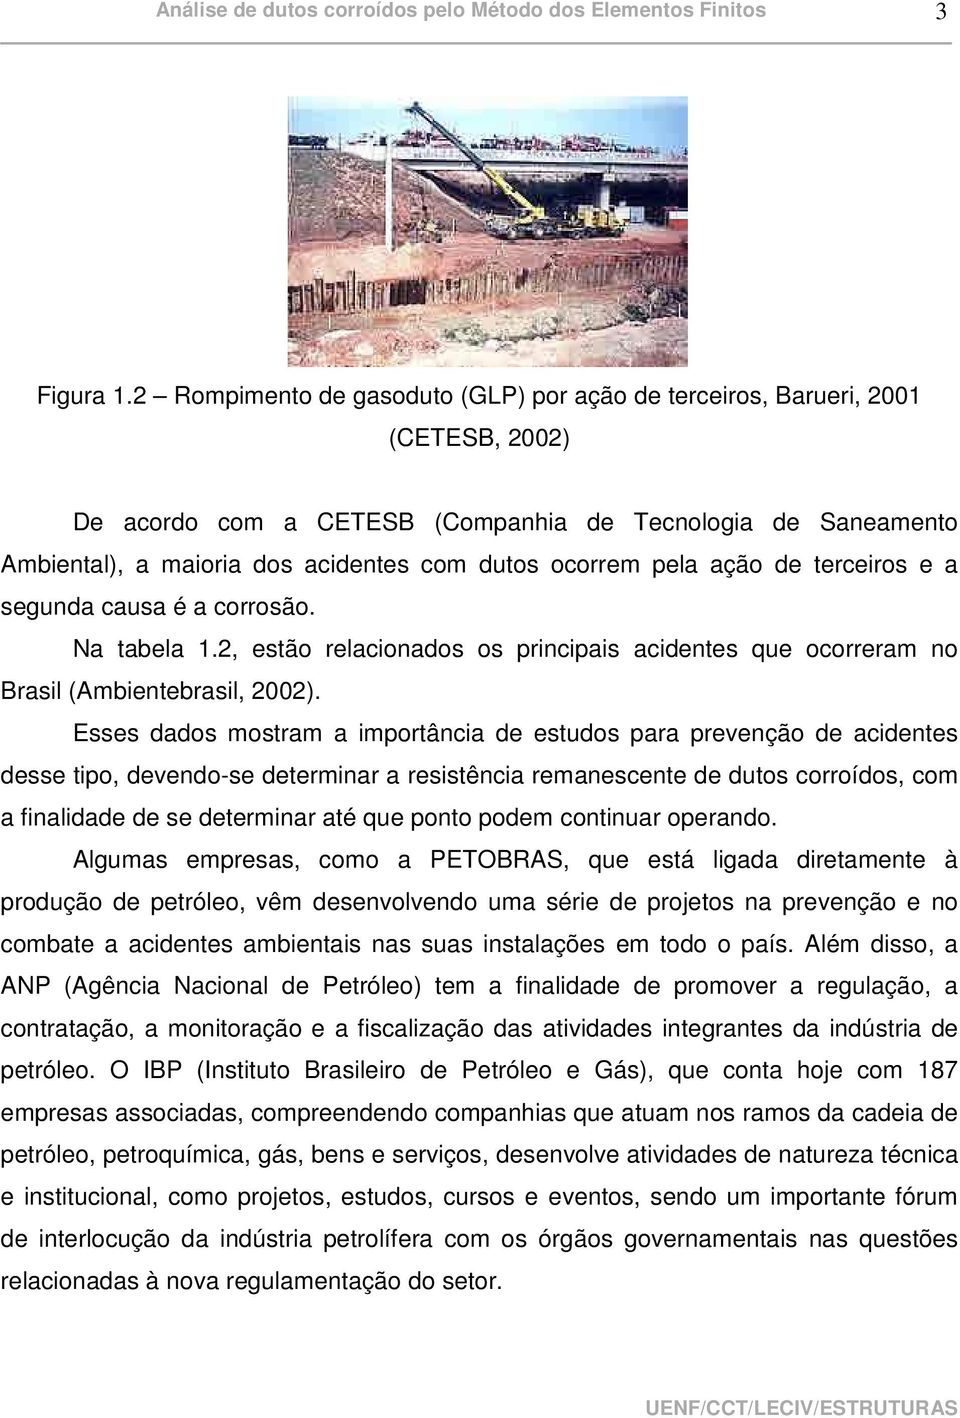 pela ação de terceiros e a segunda causa é a corrosão. Na tabela 1.2, estão relacionados os principais acidentes que ocorreram no Brasil (Ambientebrasil, 2002).